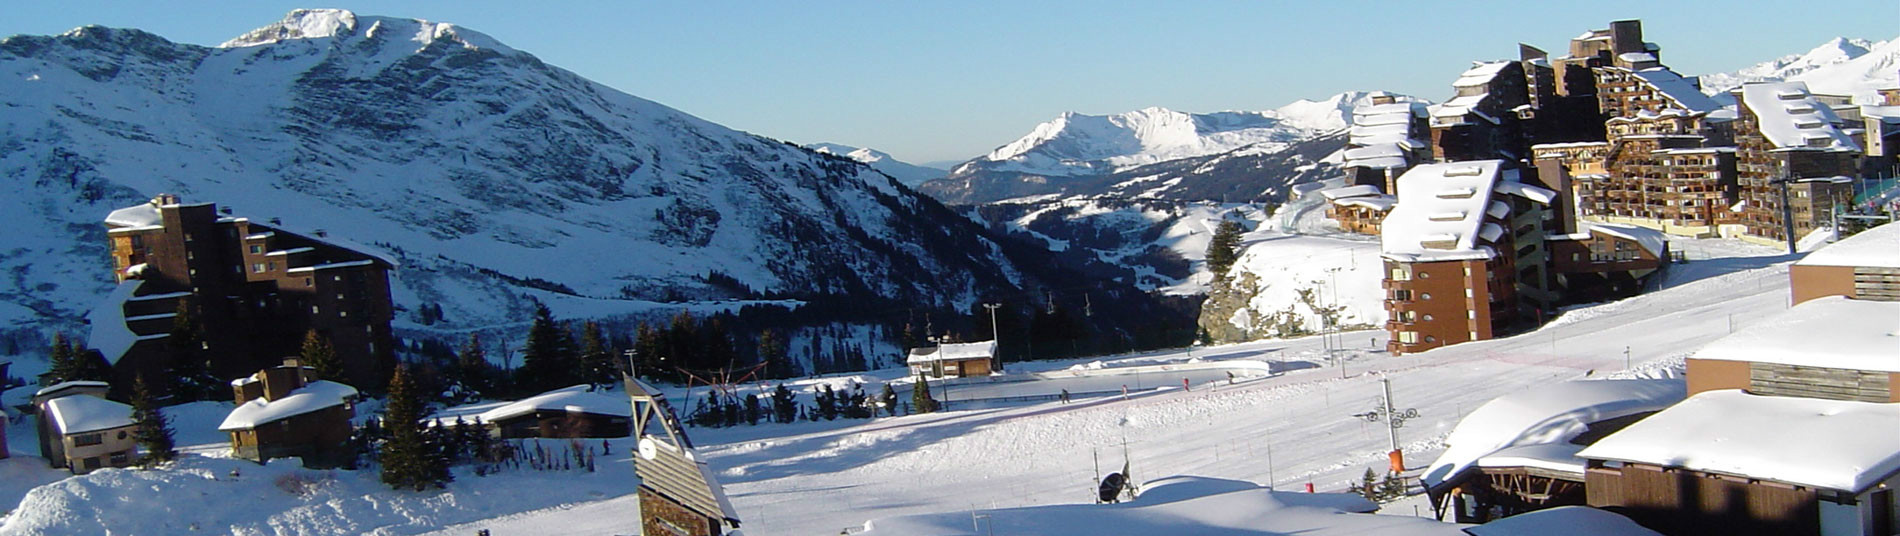 Hoteles en todas las estaciones de esquí - España, Andorra, Francia, Suiza....